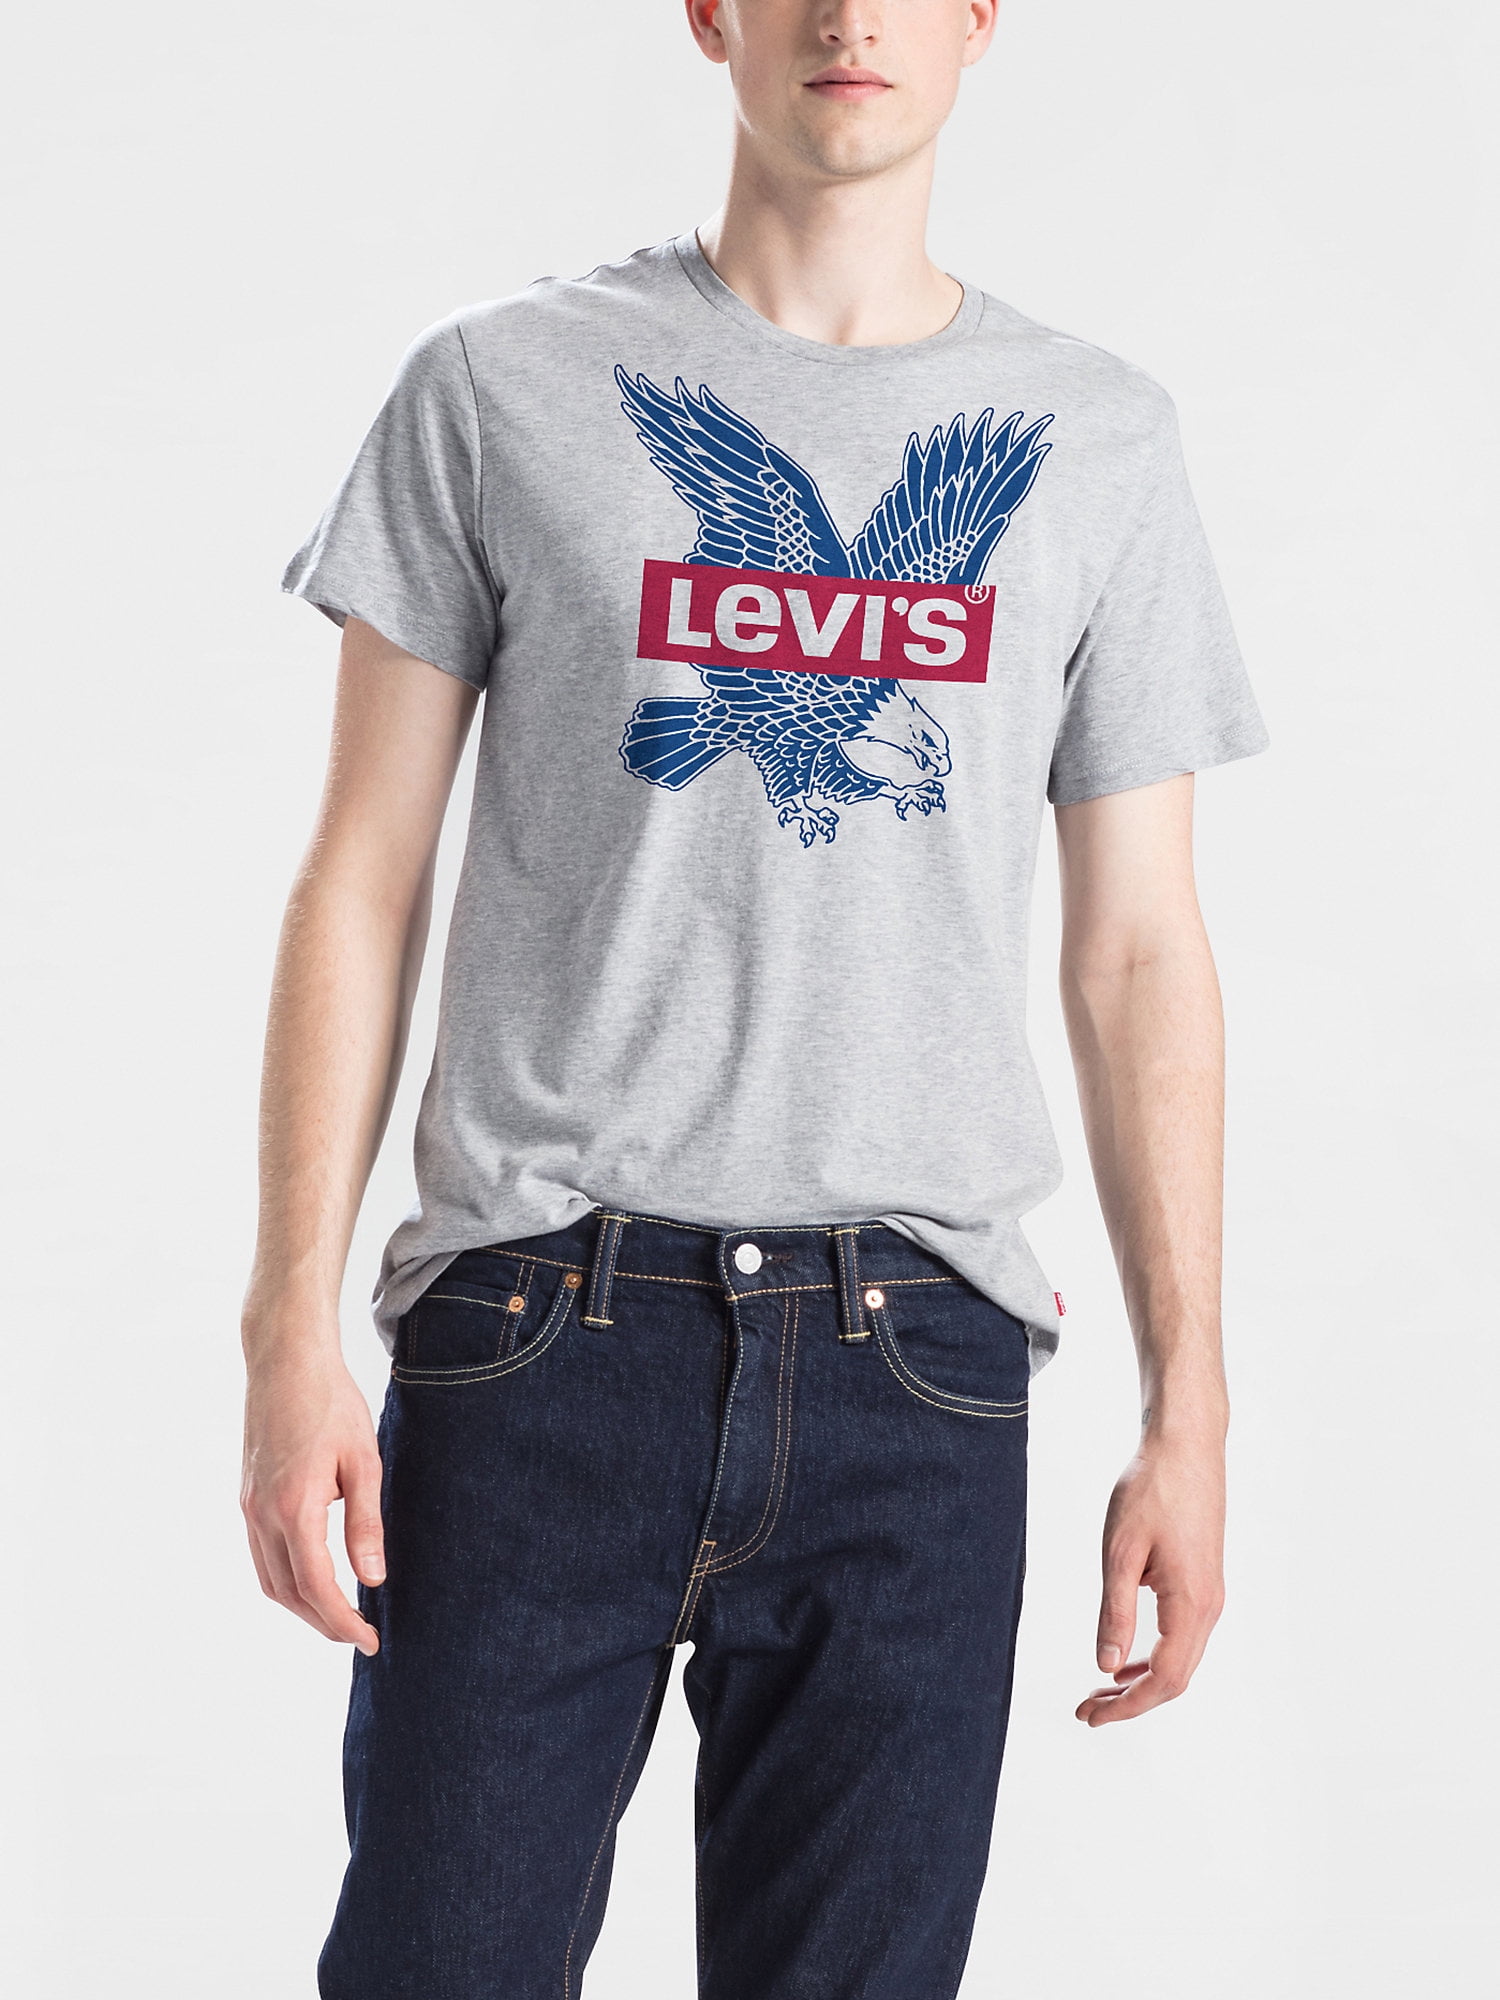 Size S M L XL 2XL Levi's T-Shirt Men's NWT Classic Black Tab Logo on H Grey 